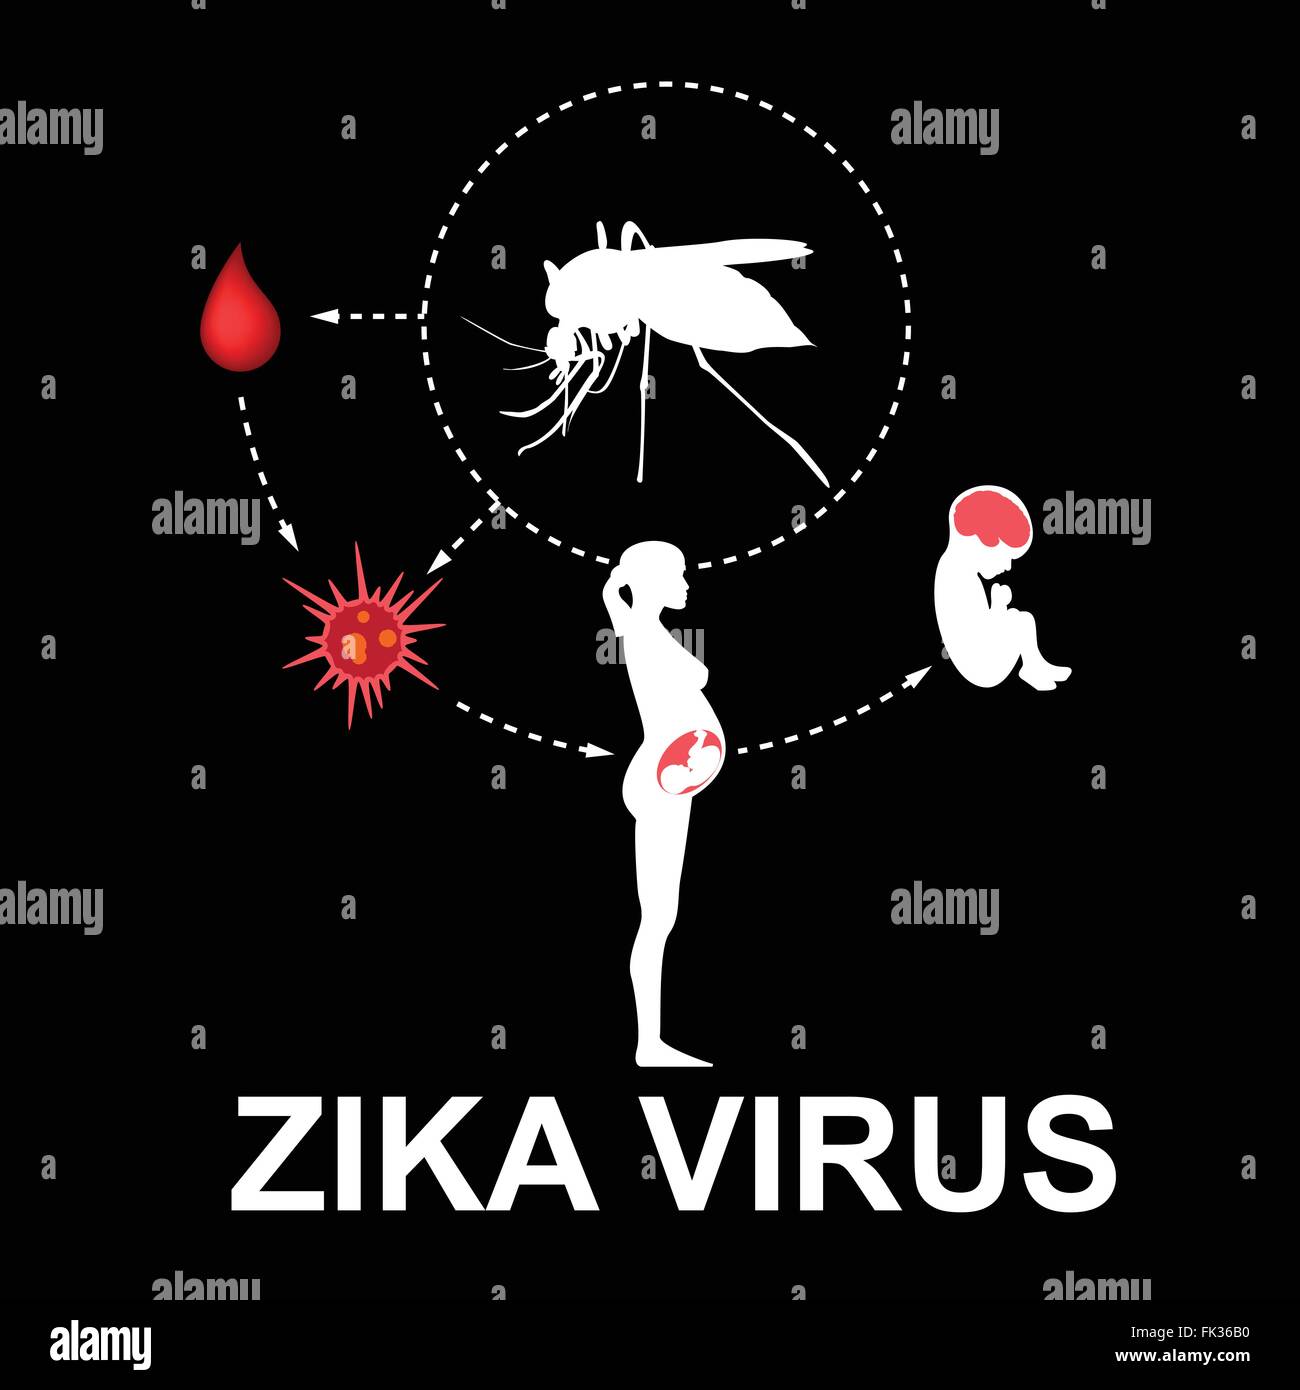 Zika virus, vector Stock Vector